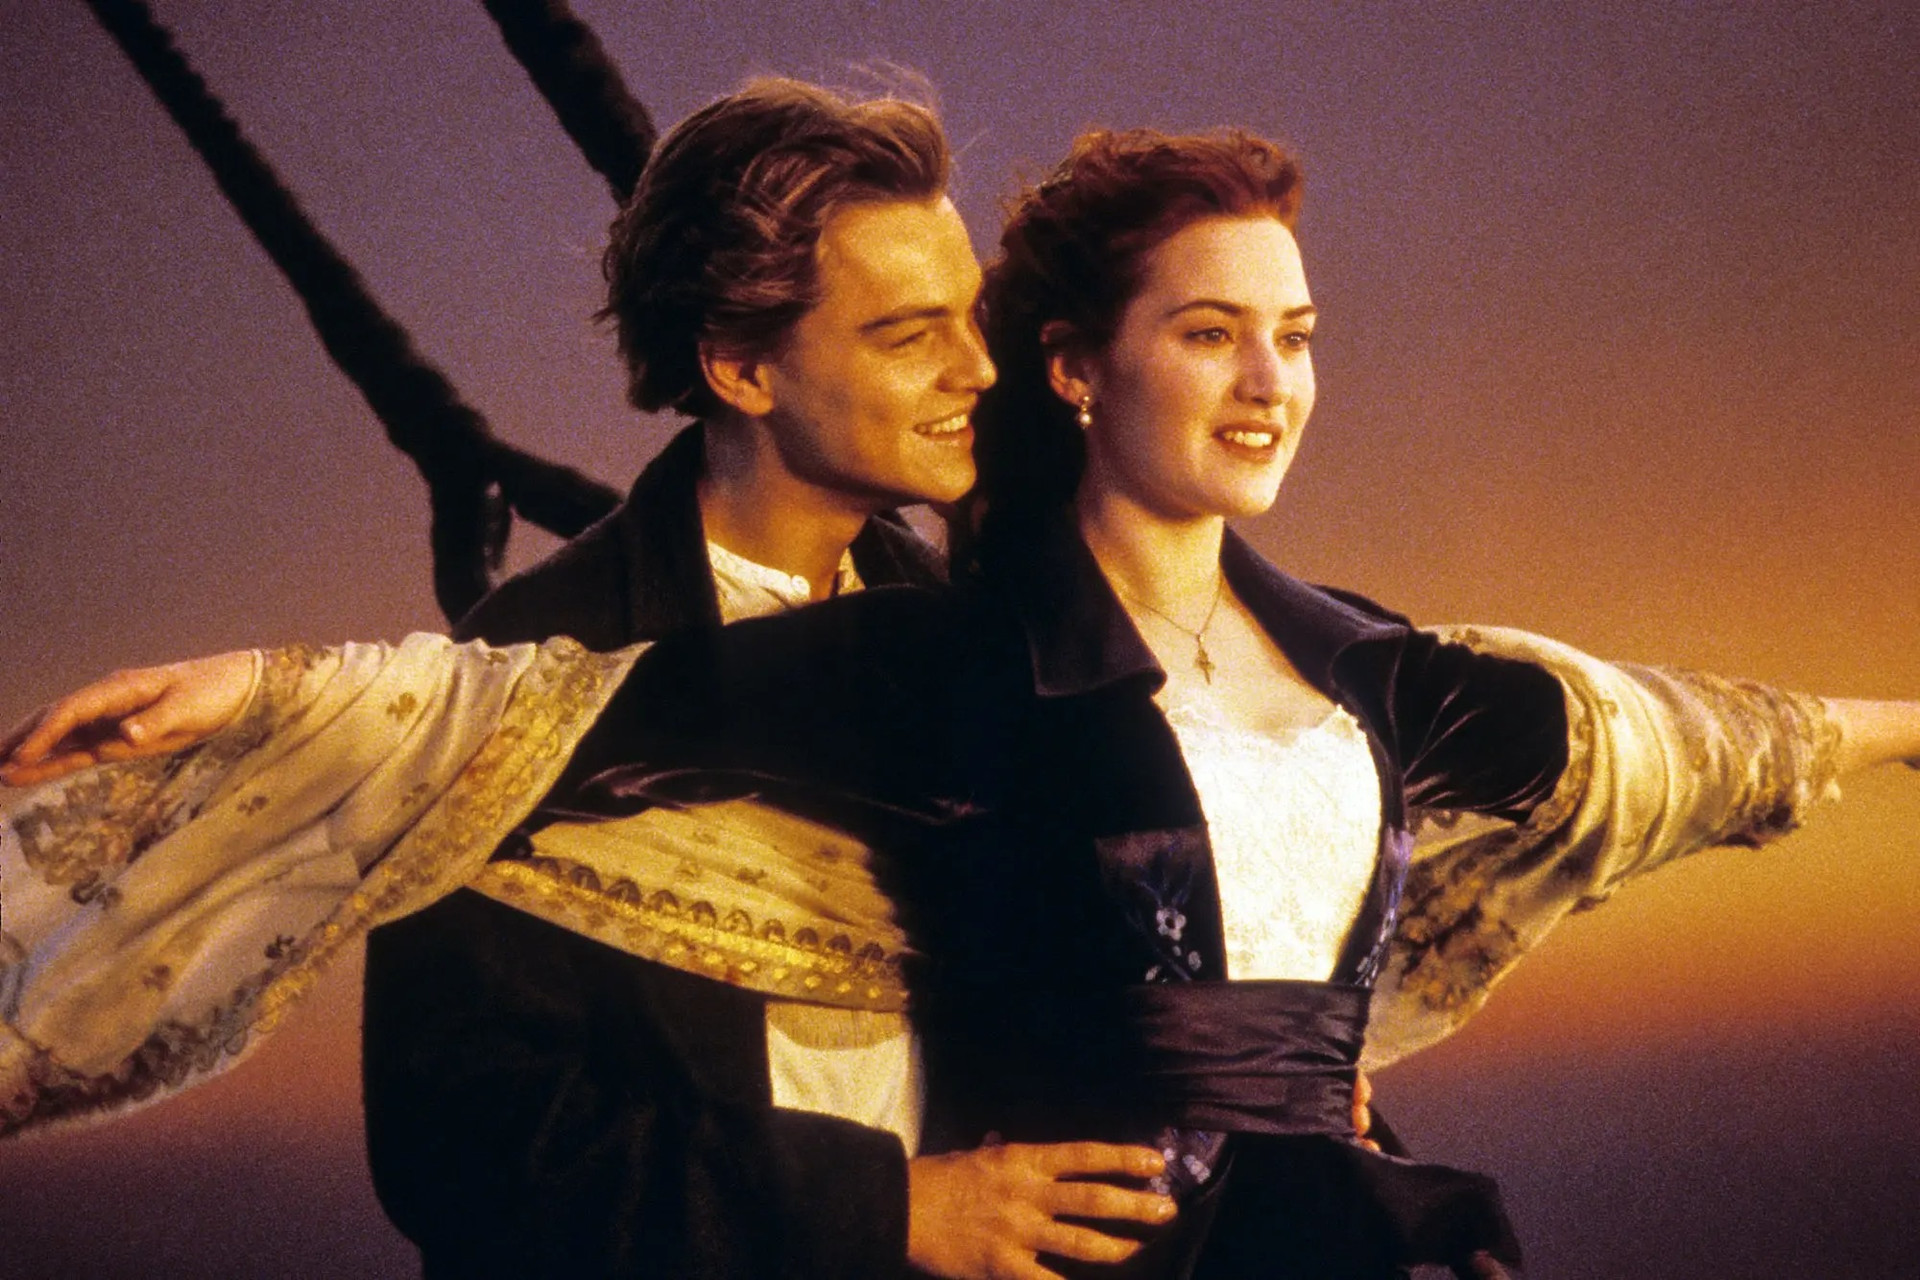 Titanic ra rạp sau 25 năm: Những bí mật bất ngờ được hé lộ - 1